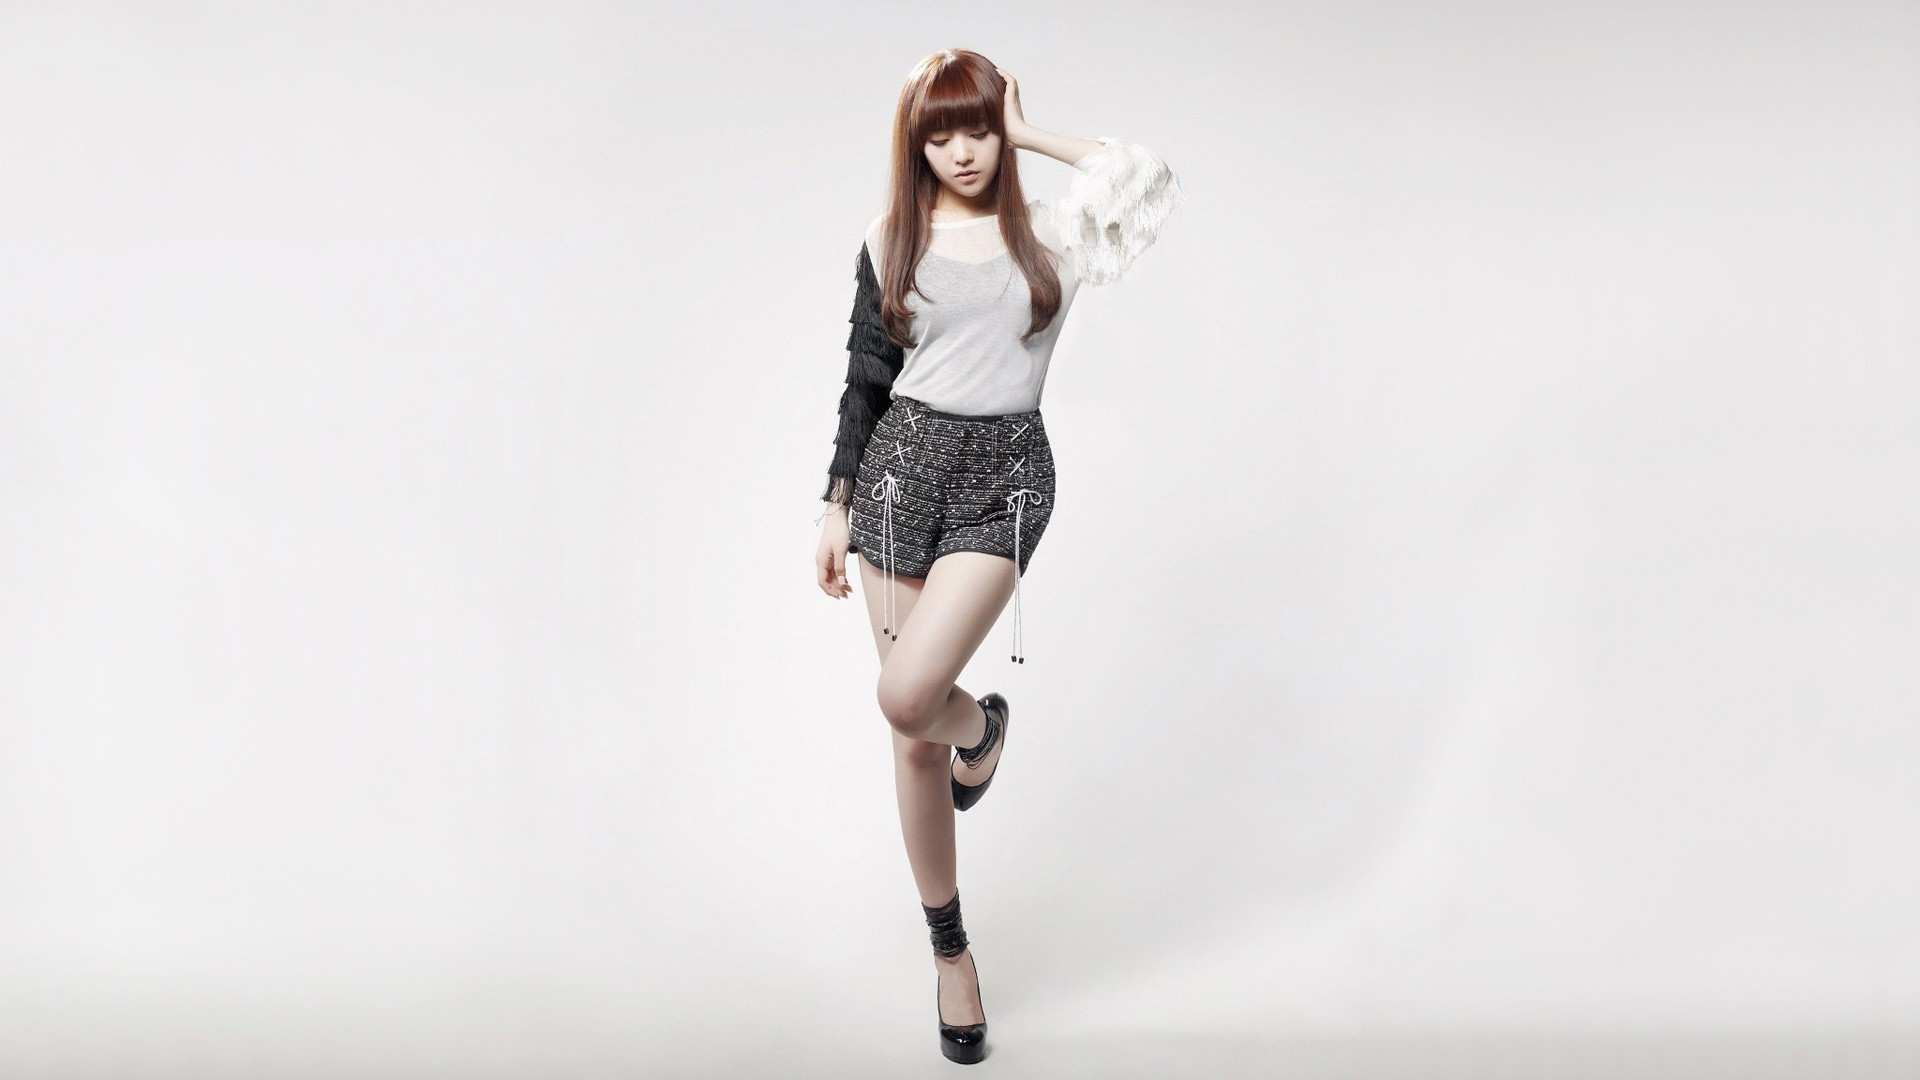 Girls Day K Pop Asian Bang Minah Korean Women Singer Sexy